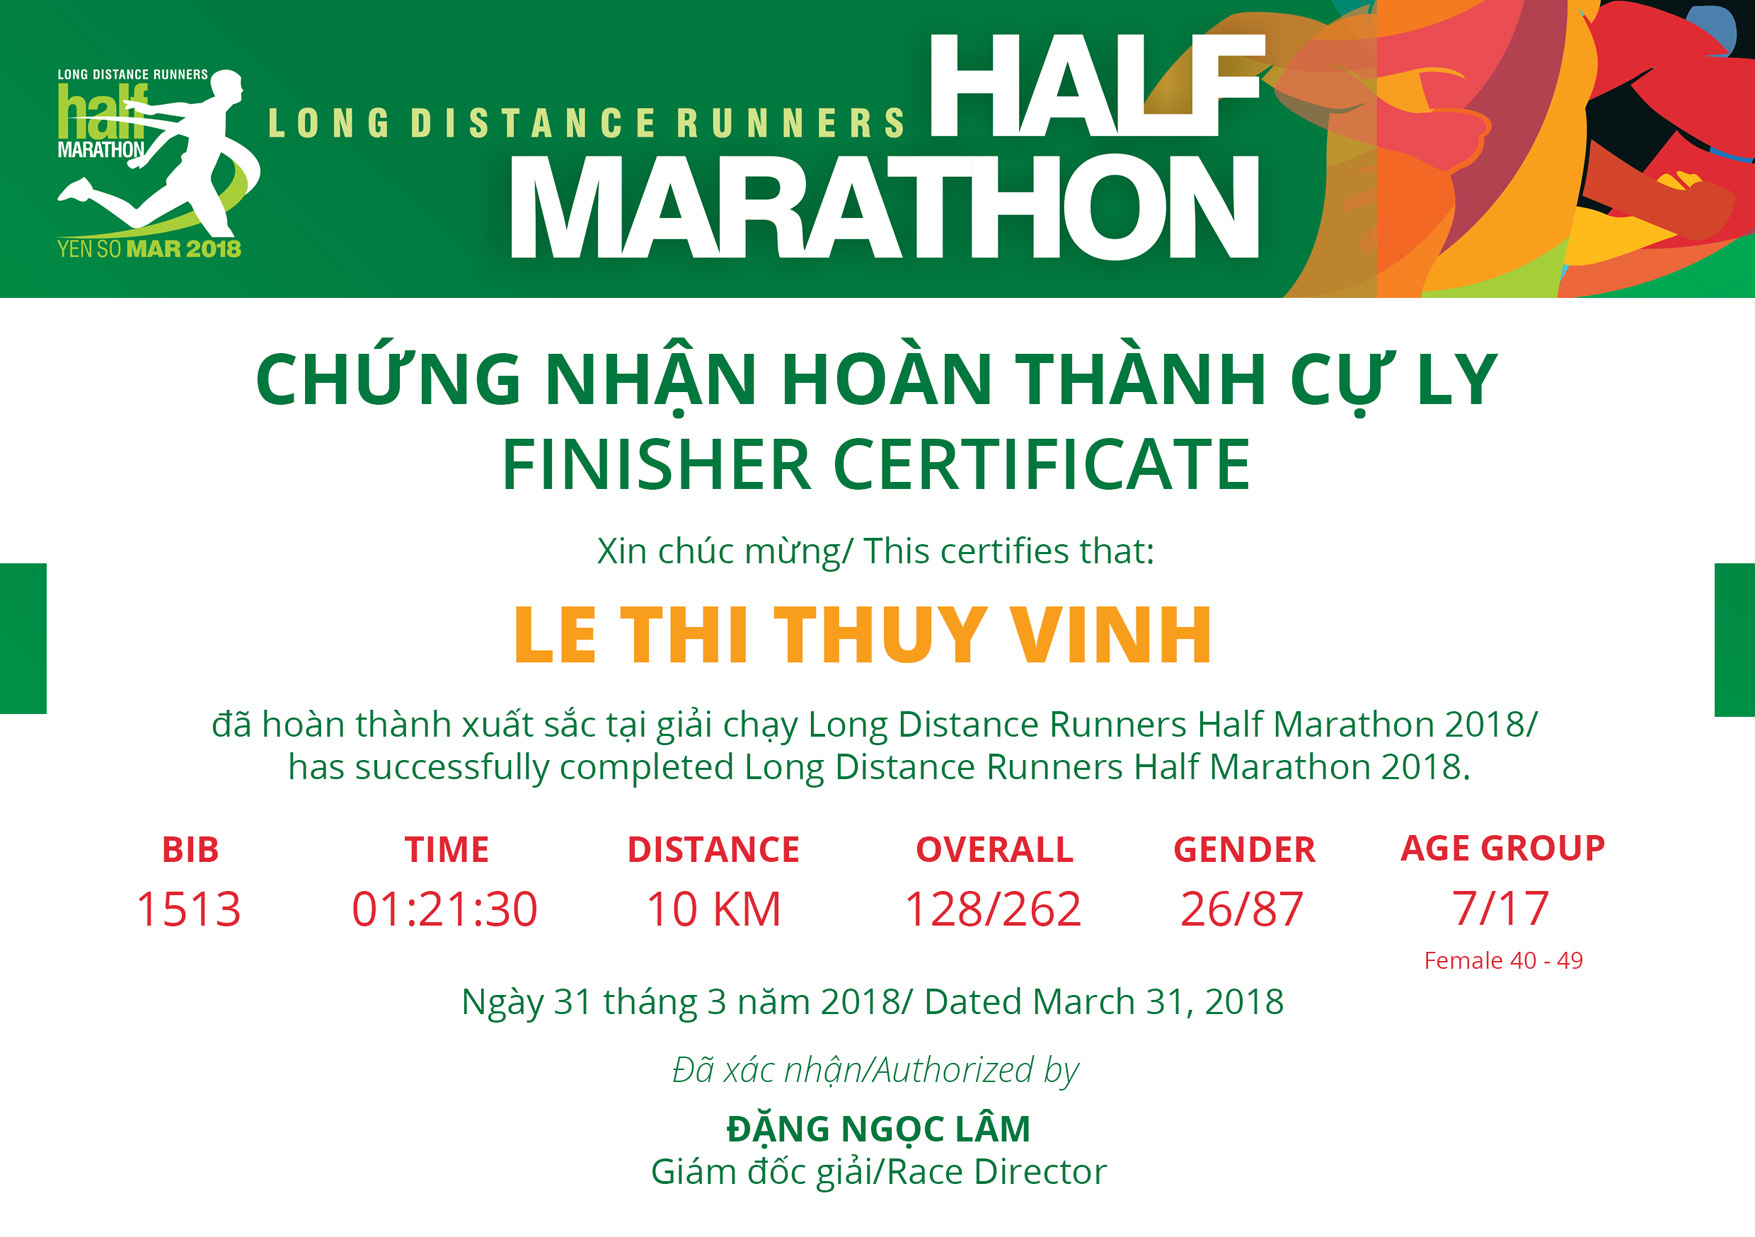 1513 - Le Thi Thuy Vinh